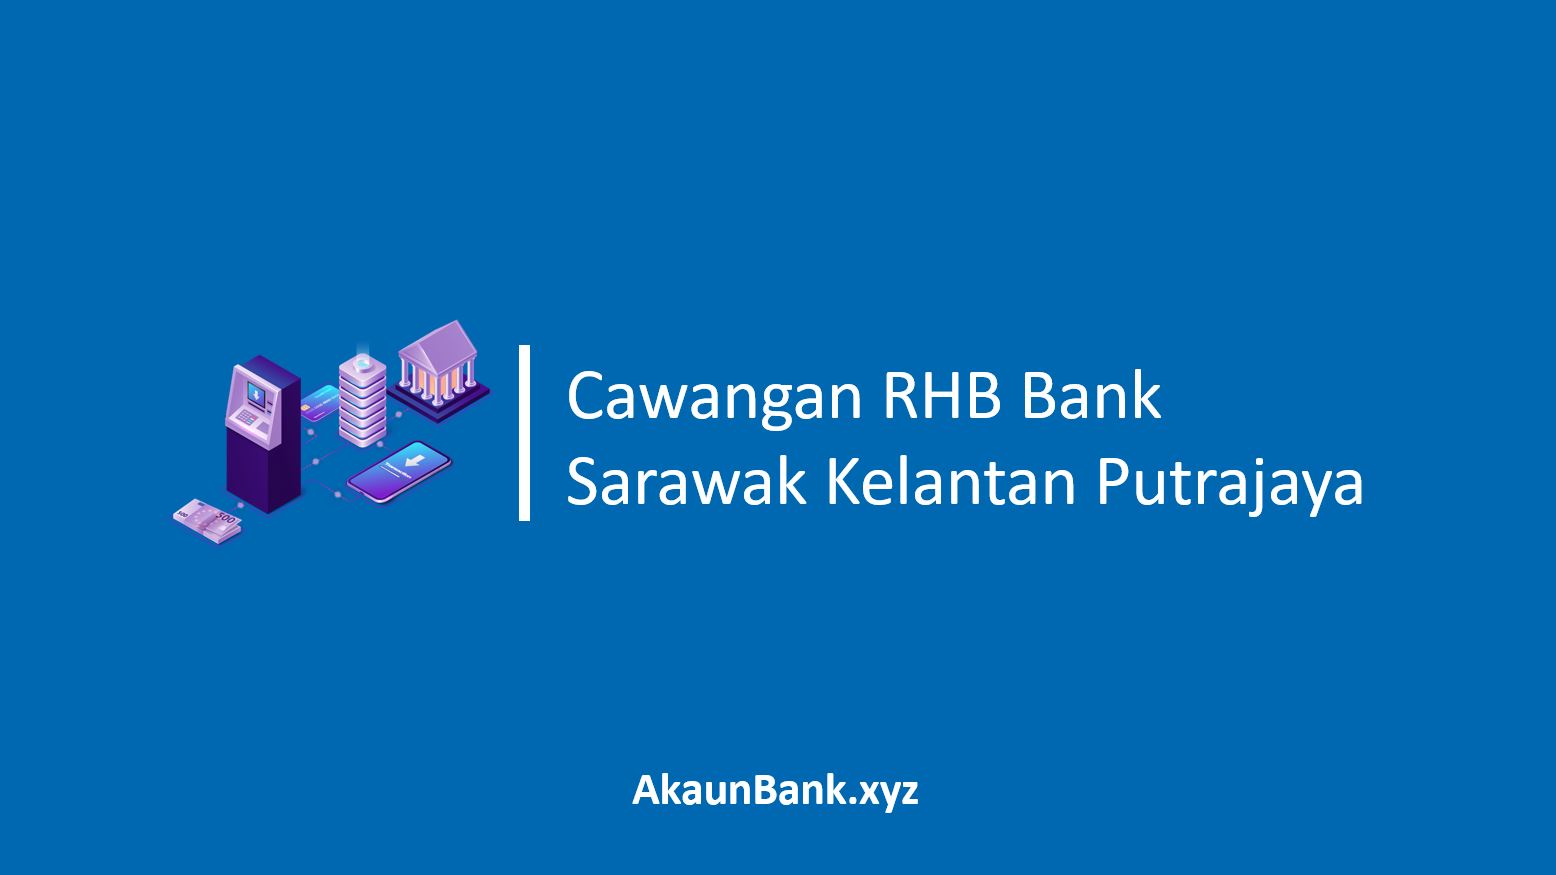 Cawangan RHB Bank Sarawak Kelantan Putrajaya